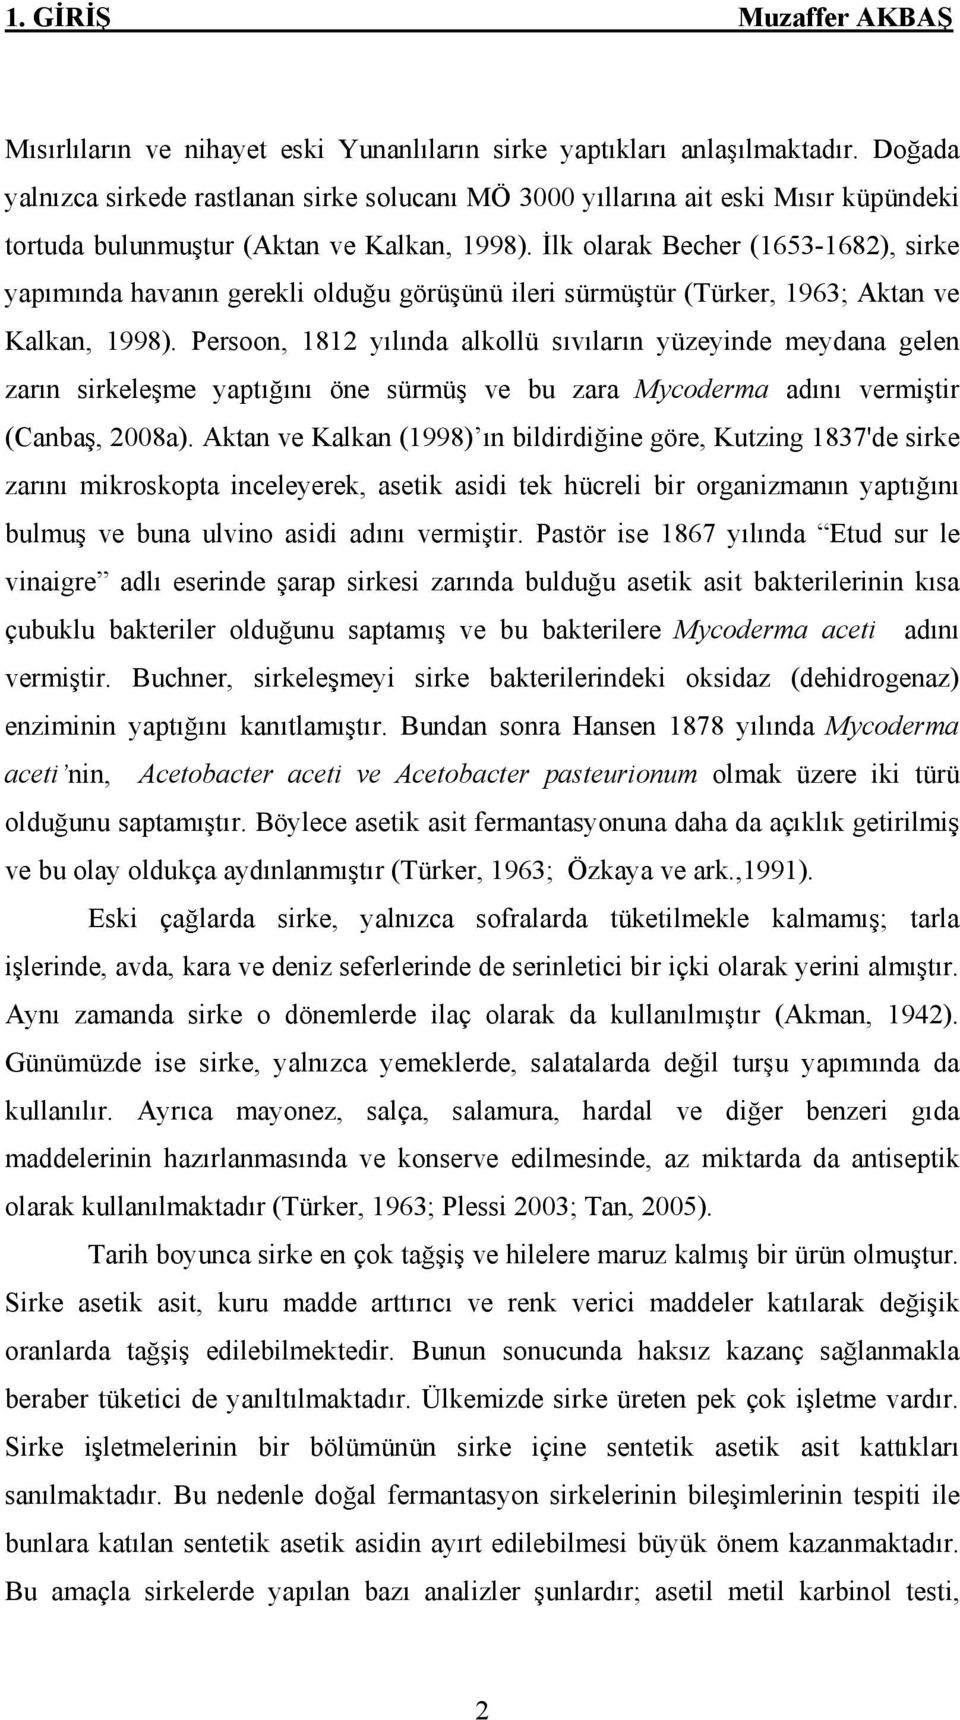 lk olarak Becher (1653-1682), sirke yap m nda havan n gerekli oldu u görü ünü ileri sürmü tür (Türker, 1963; Aktan ve Kalkan, 1998).